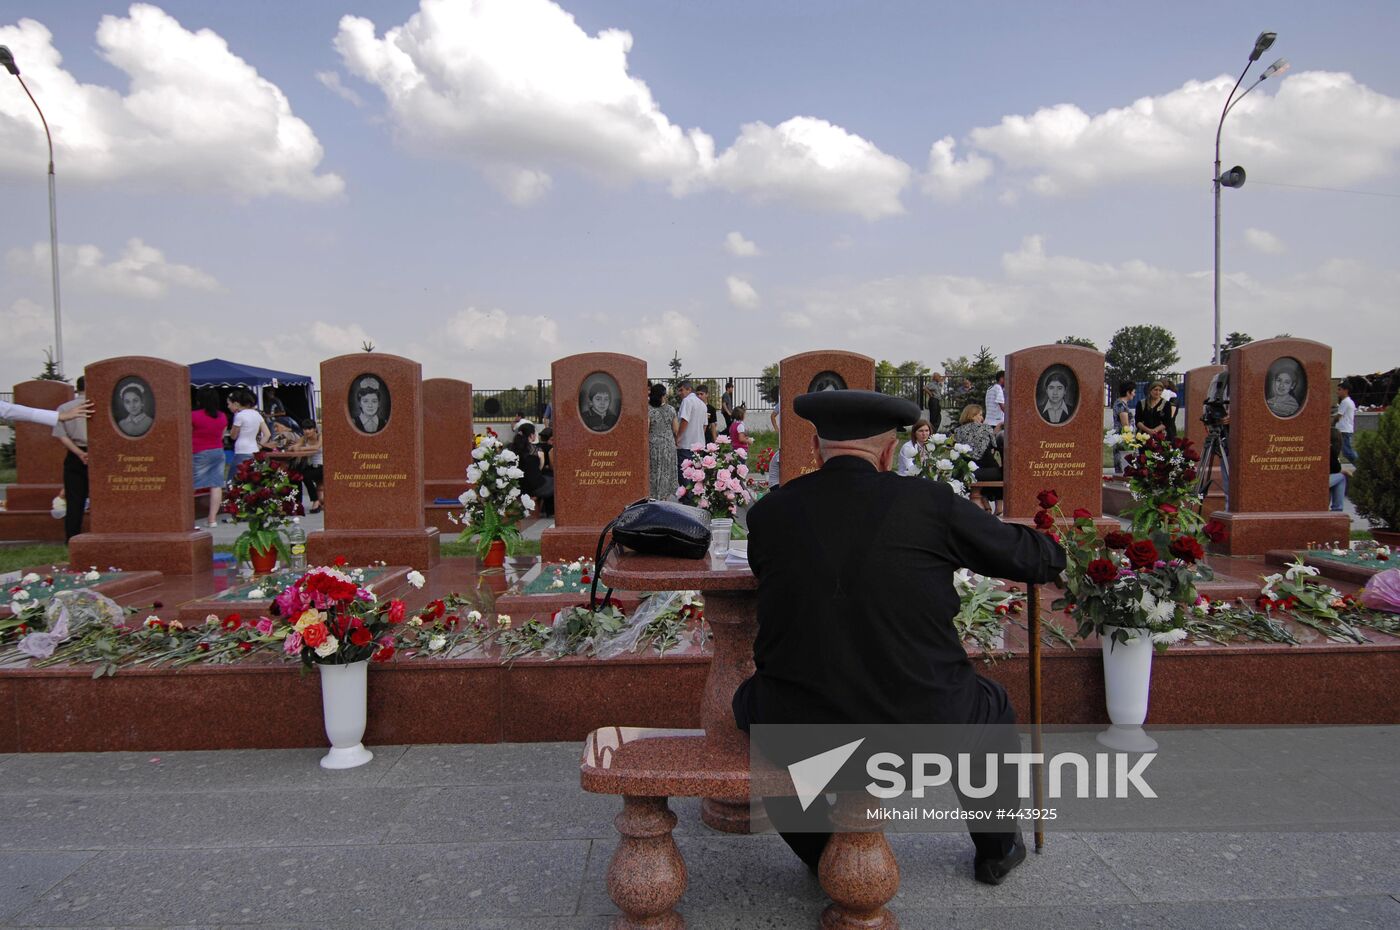 Beslan mourns school siege